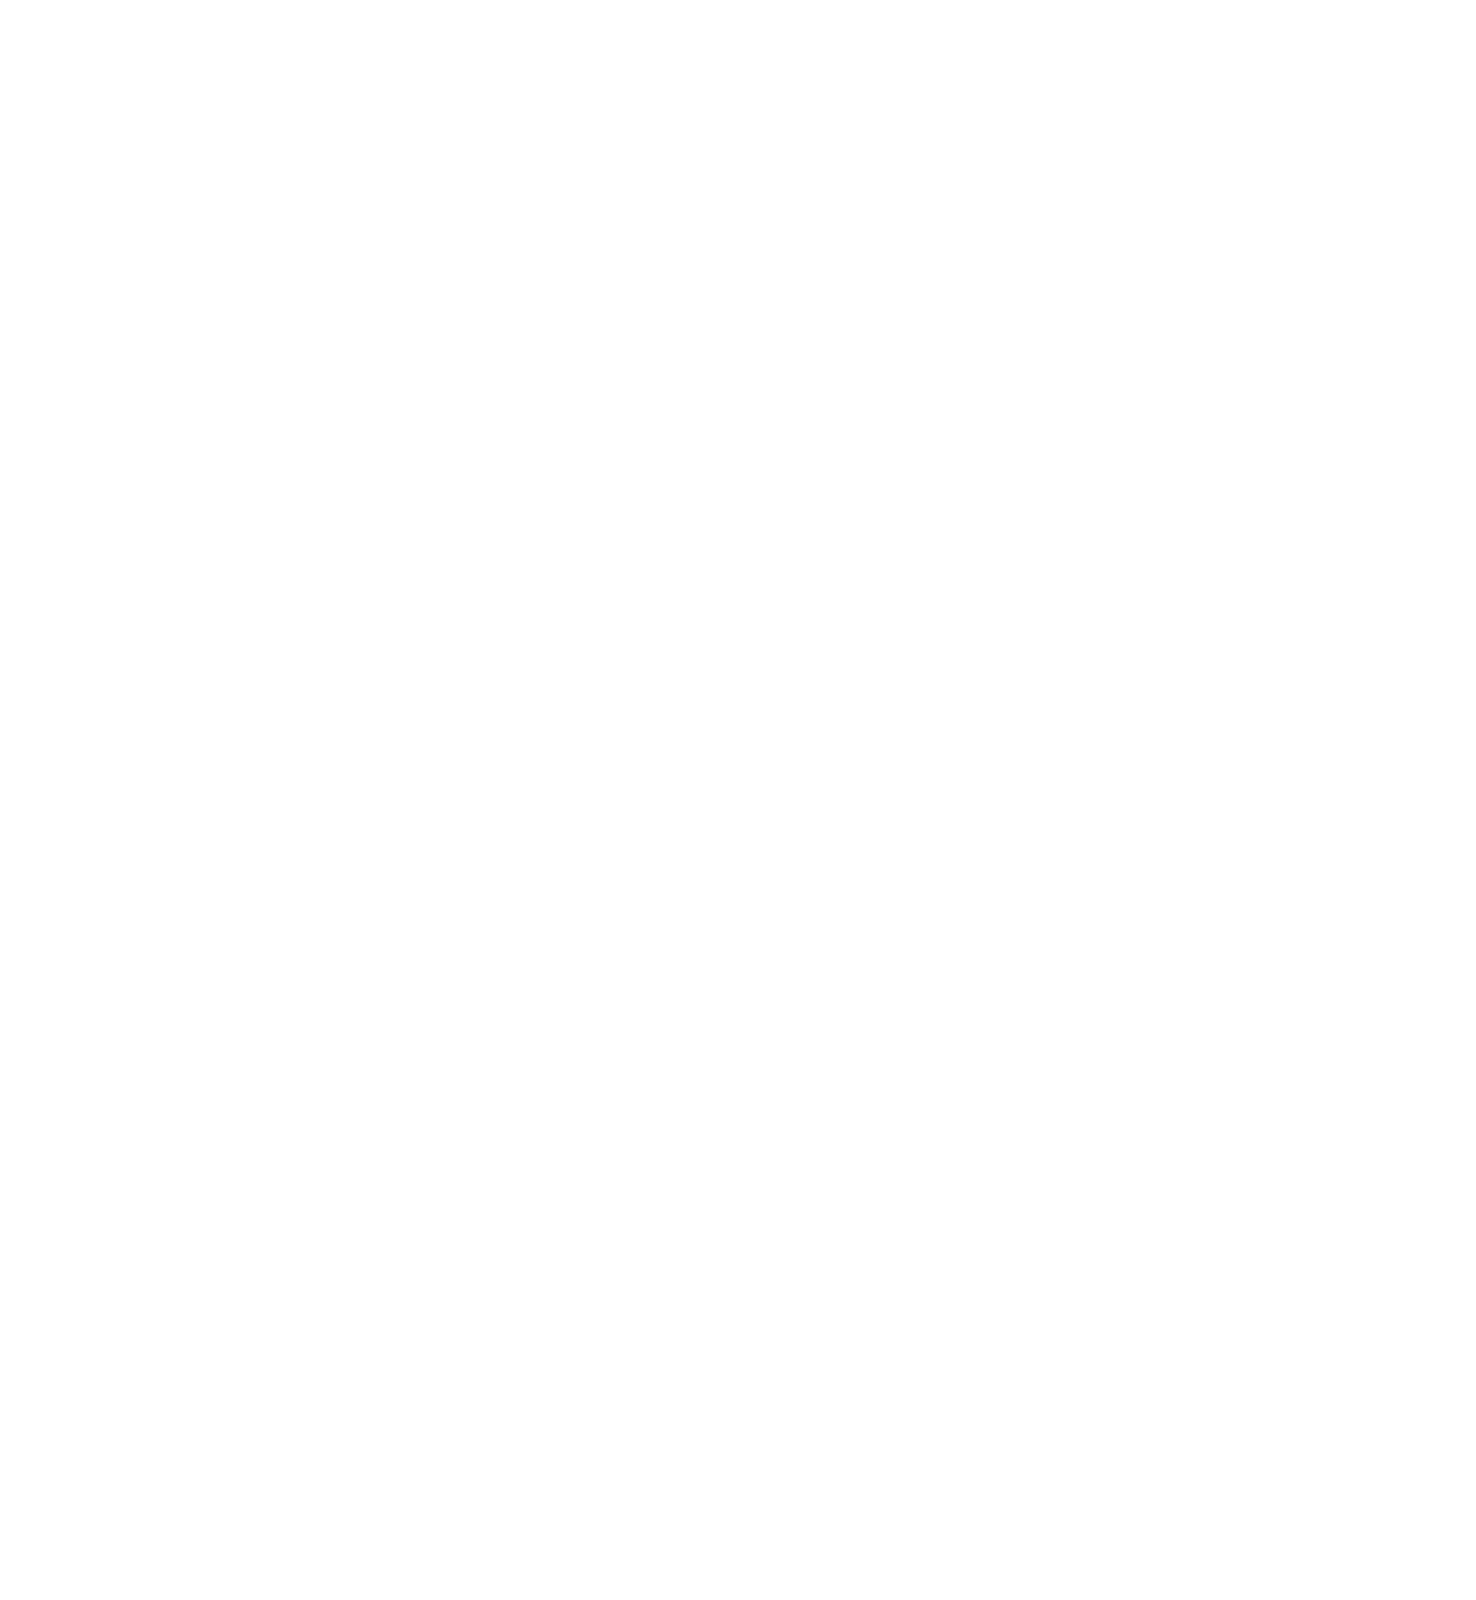 大橋トリオ、本日リリース最新アルバム「THUNDERBIRD」タイトル曲のMV公開サムネイル画像!